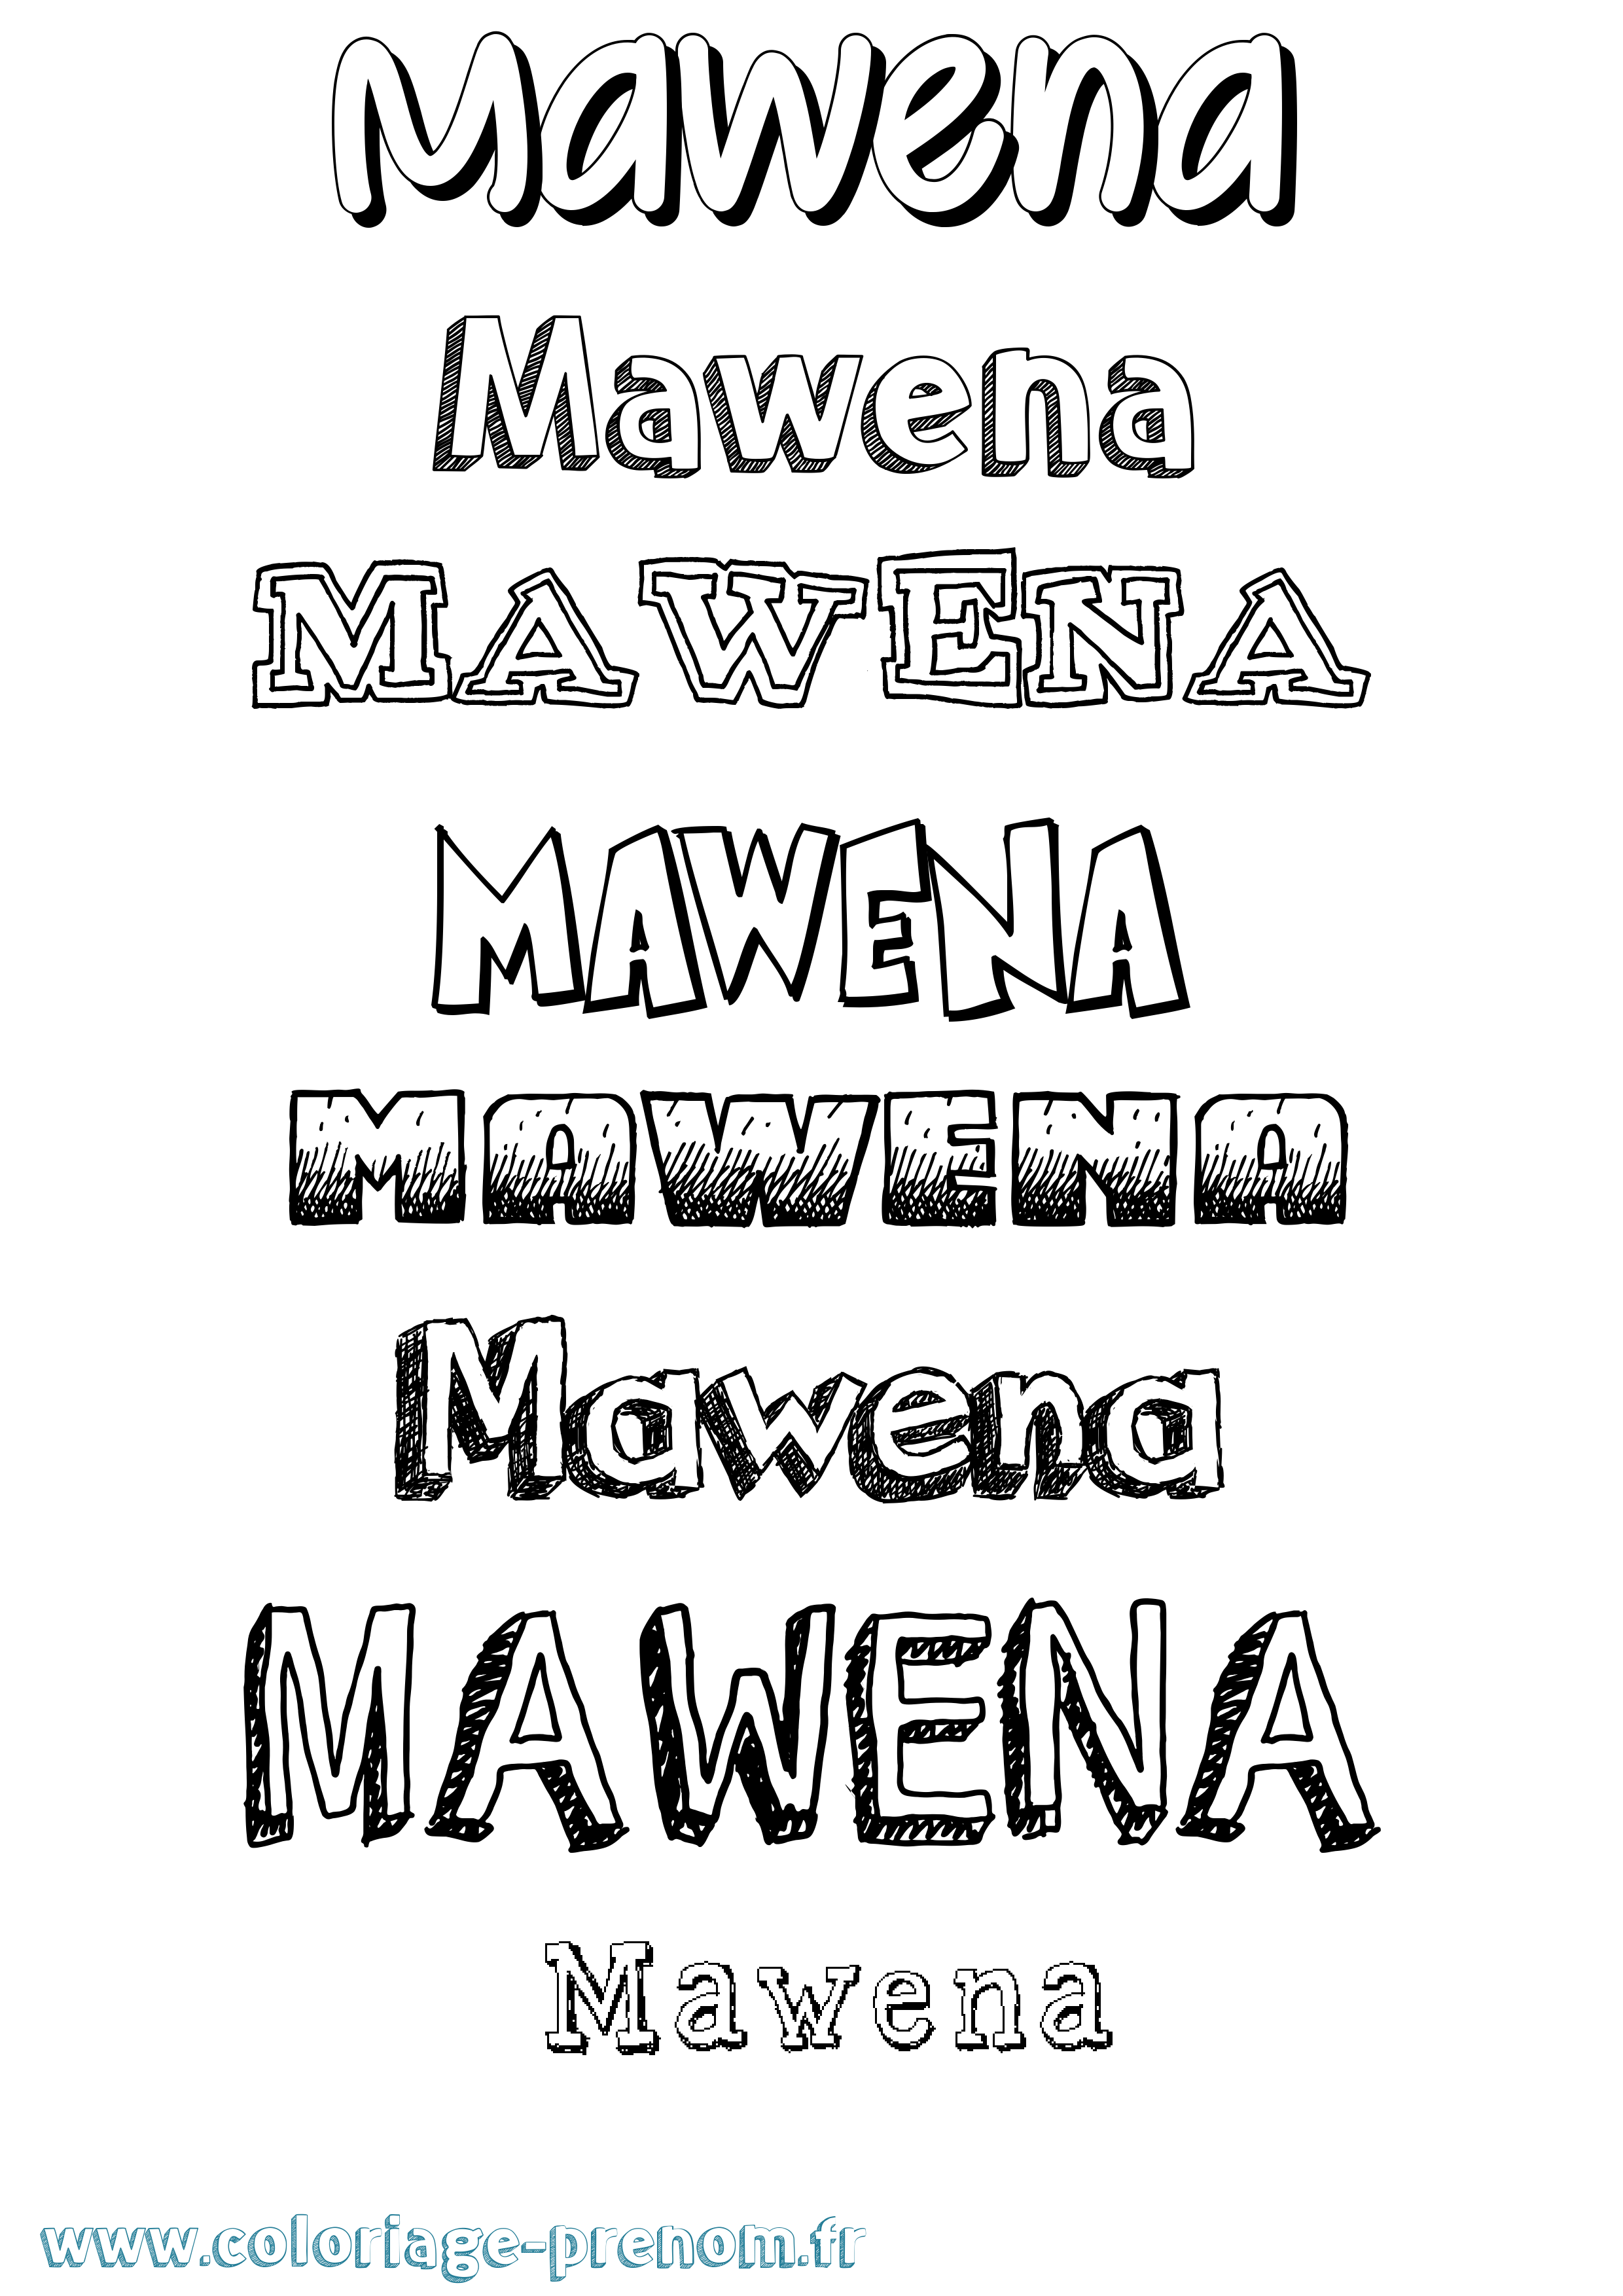 Coloriage prénom Mawena Dessiné